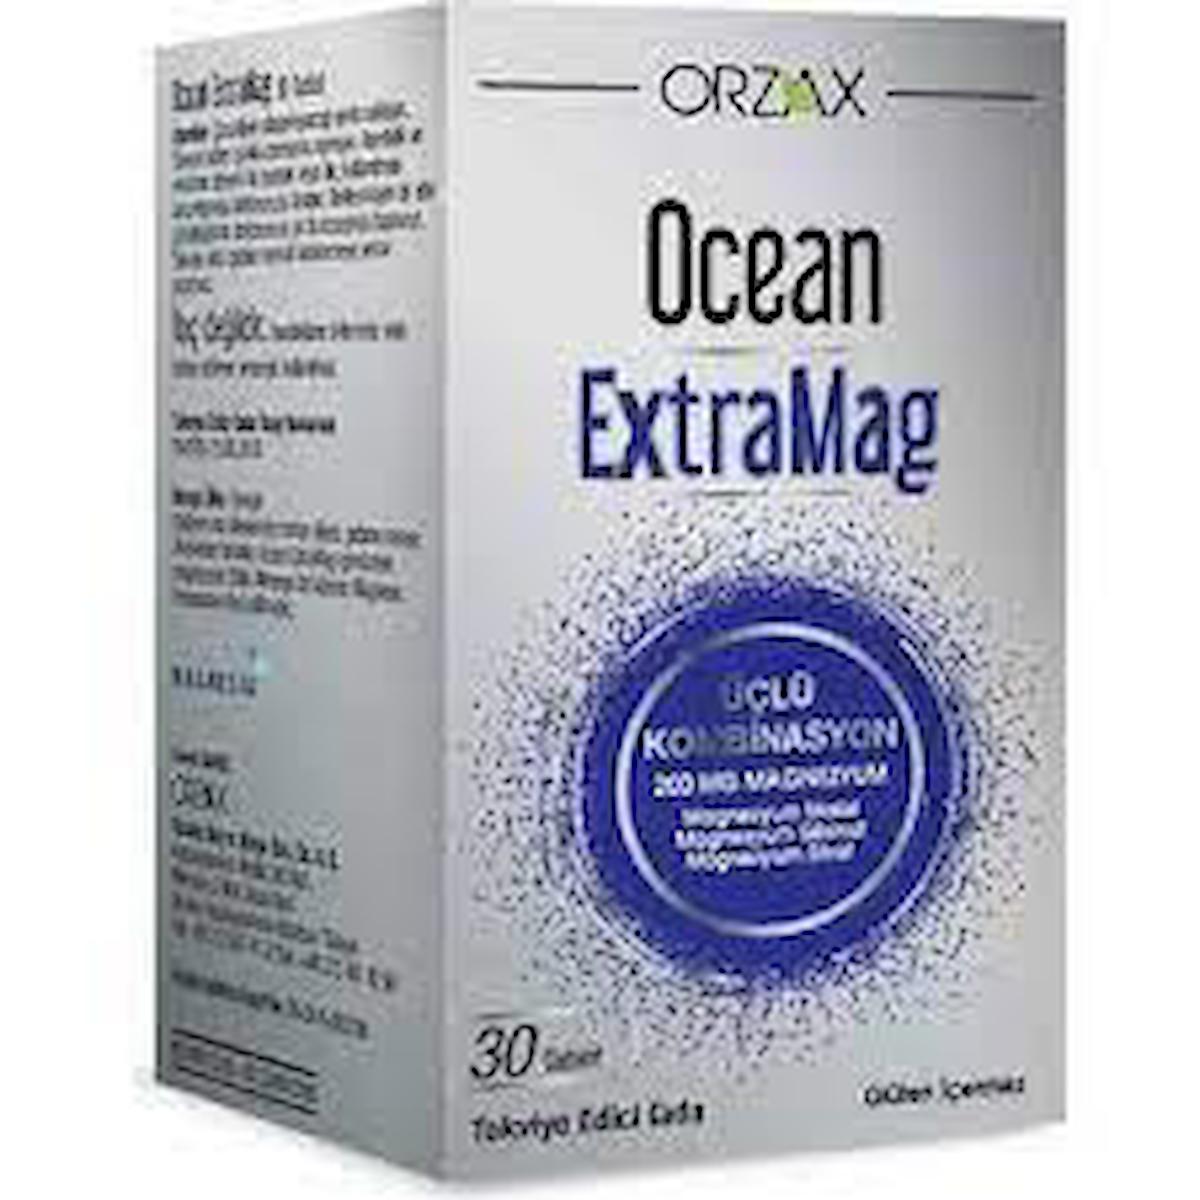 Ocean Extramag Sade Unisex Vitamin 30 Tablet